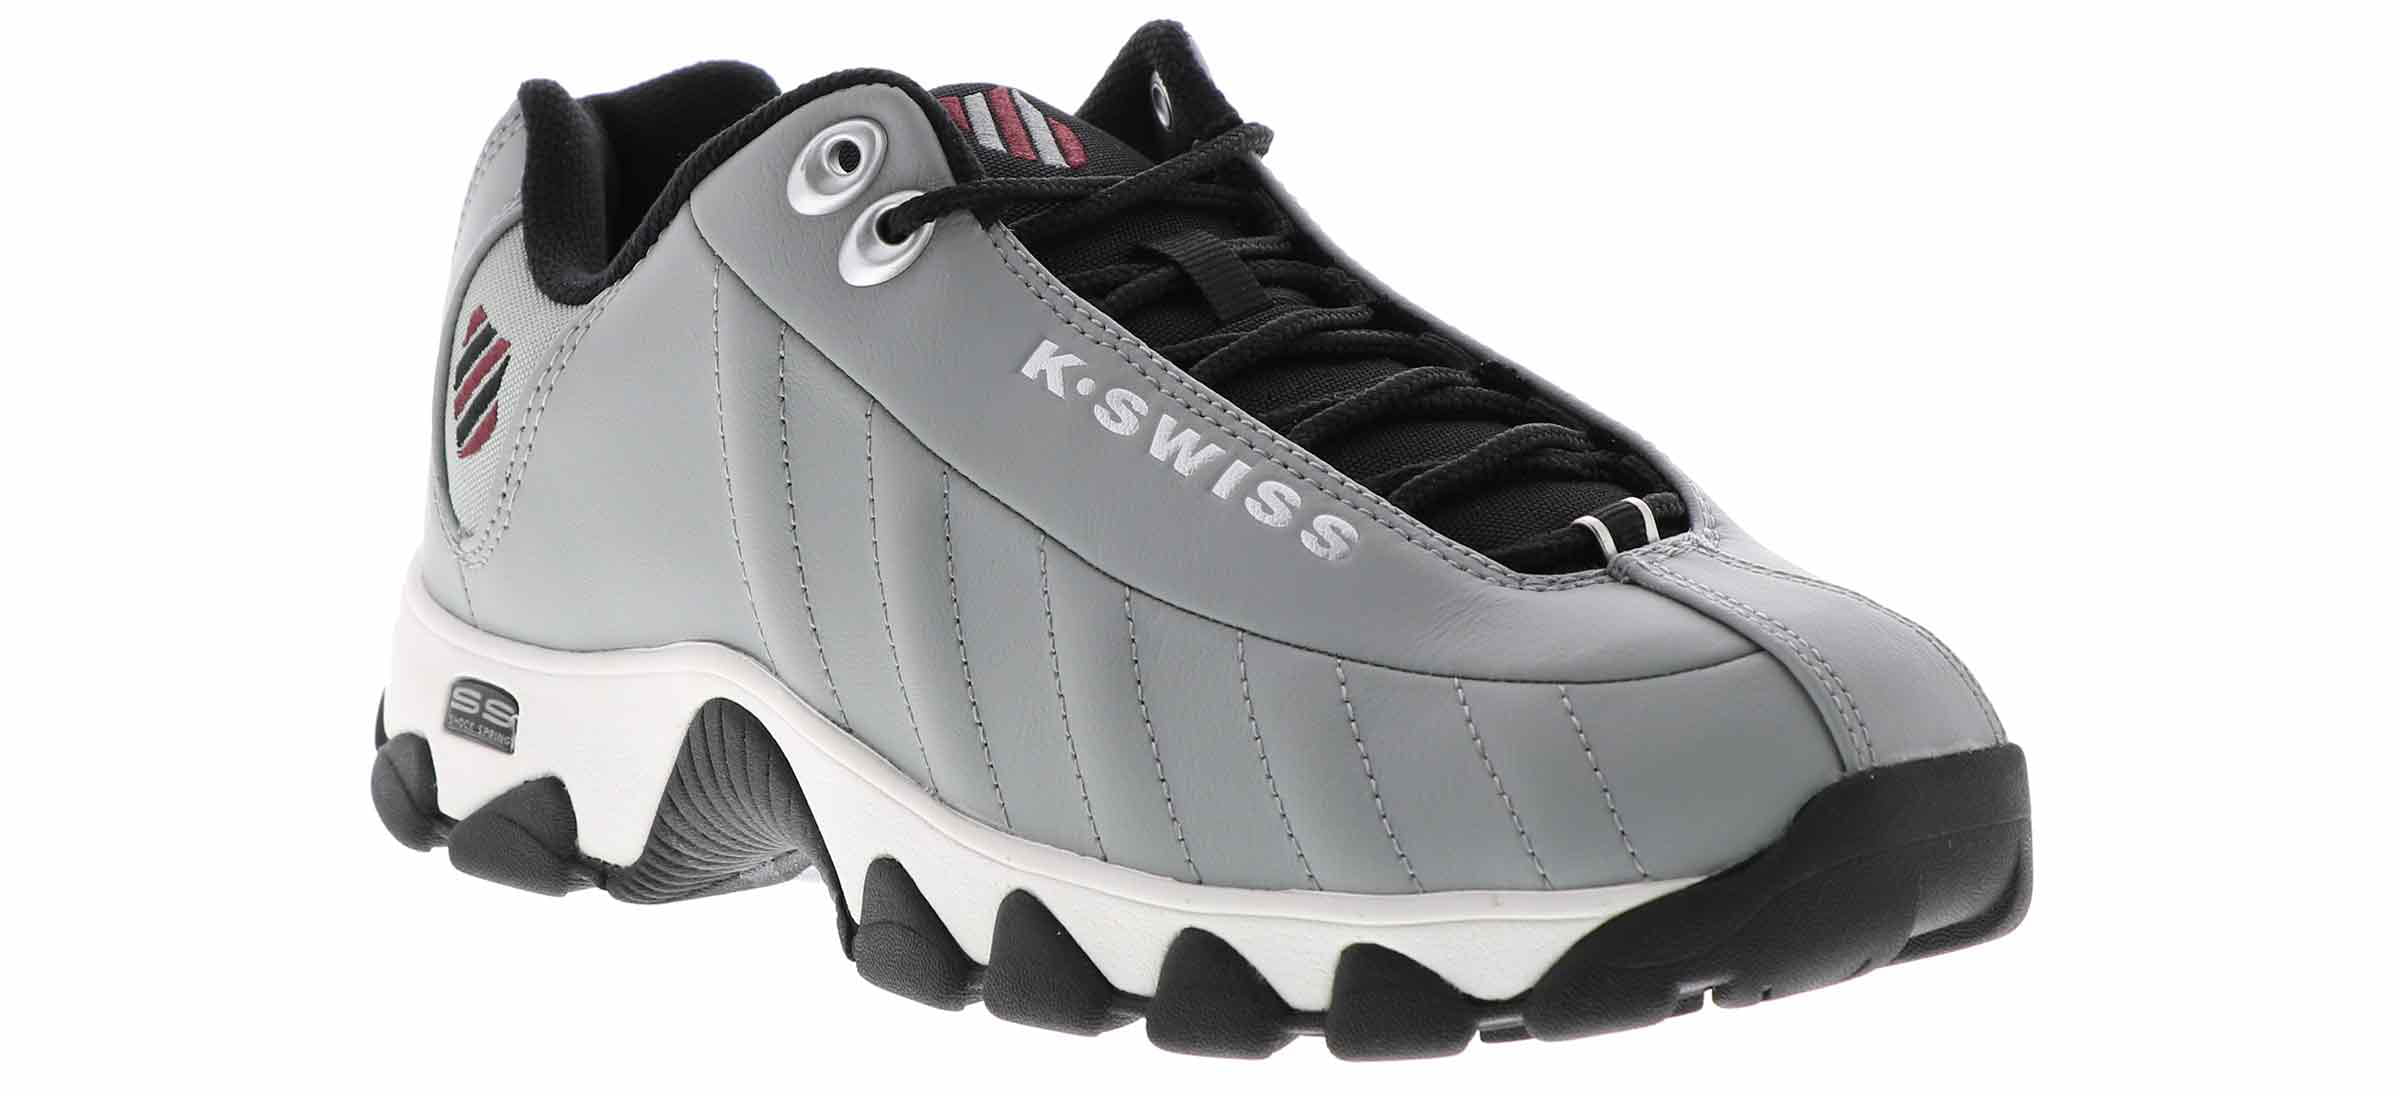 K-Swiss St329 Cmf Men's Walking Shoe in Grey, Size 9 Medium